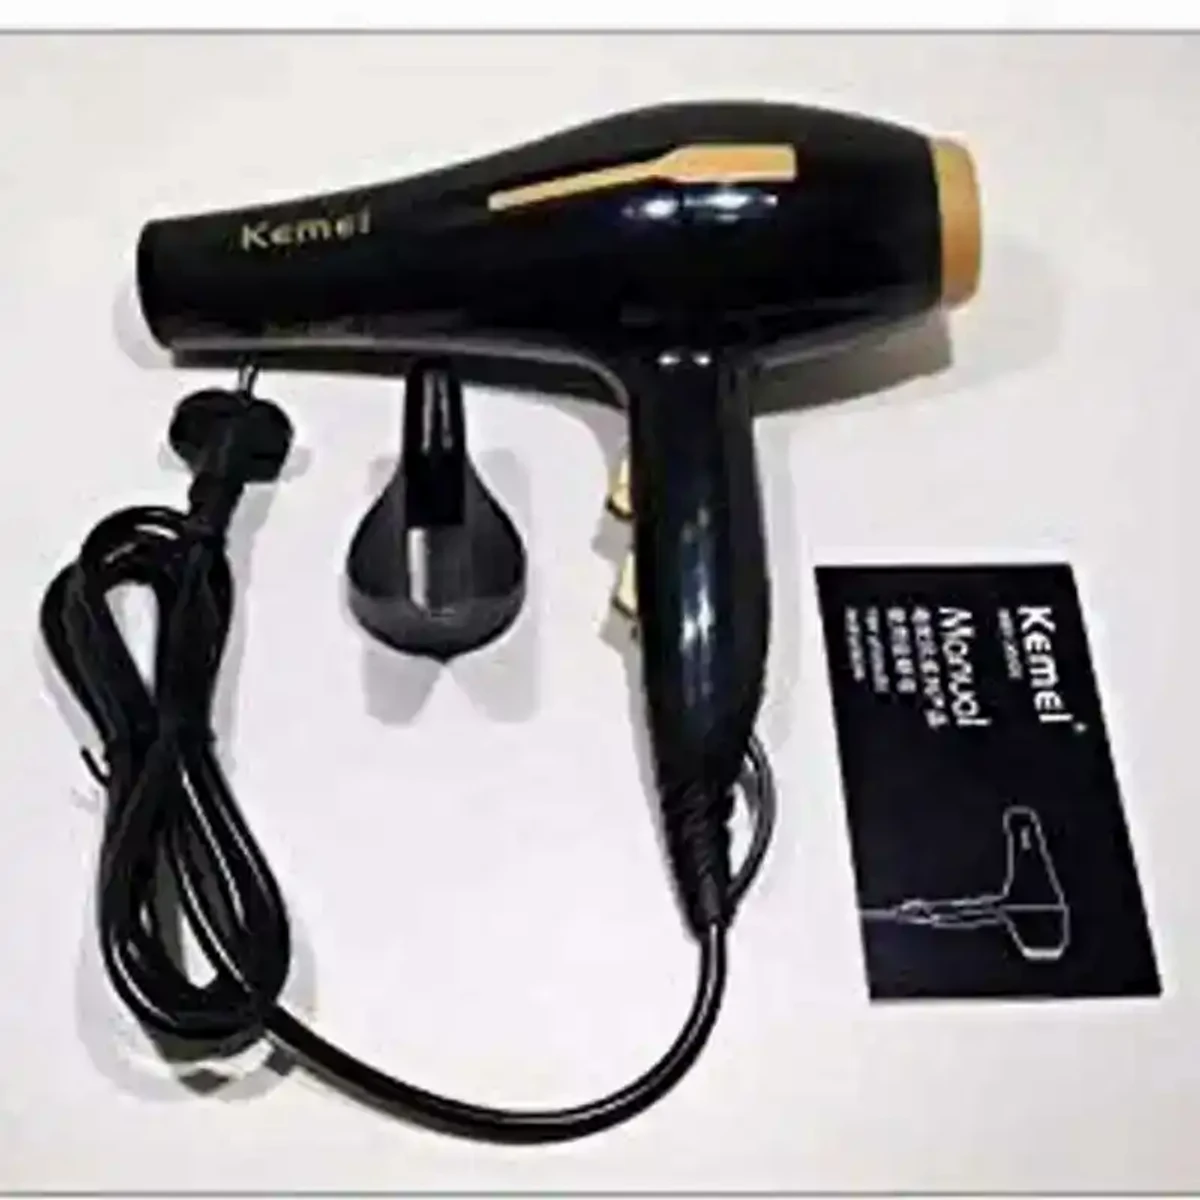 Kemei-2-in-1-hair-dryer-3000w